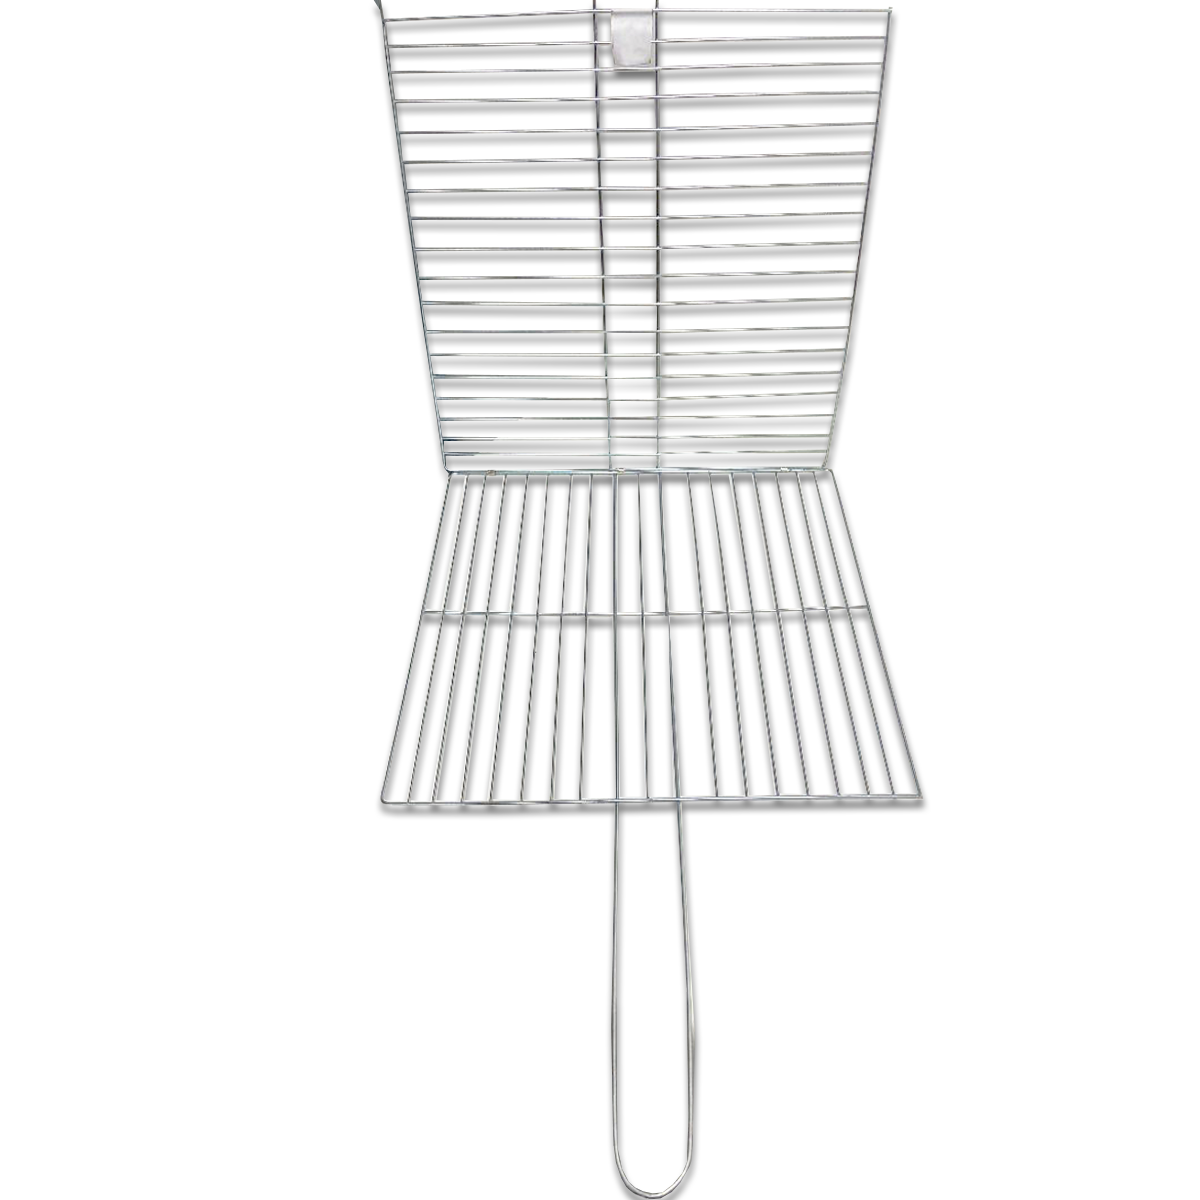 20x20cm Grilling Basket Barbecue Tool Fish Grilling/Pescado Zarandeado-